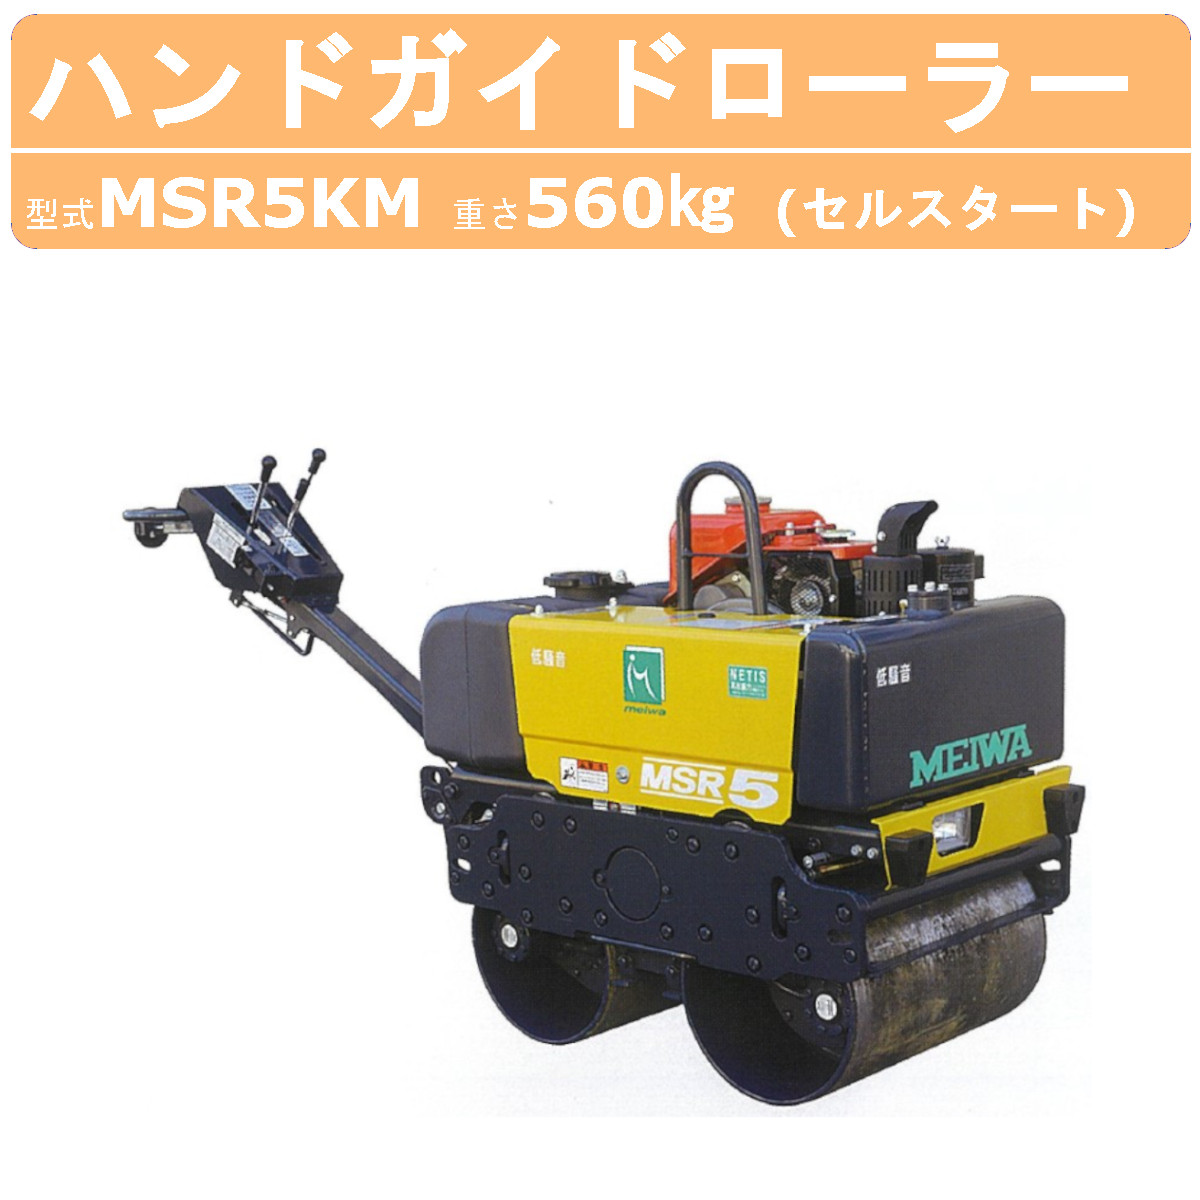 明和製作所 ハンドローラー MSR5KM 低騒音 NETIS登録商品 転圧機 